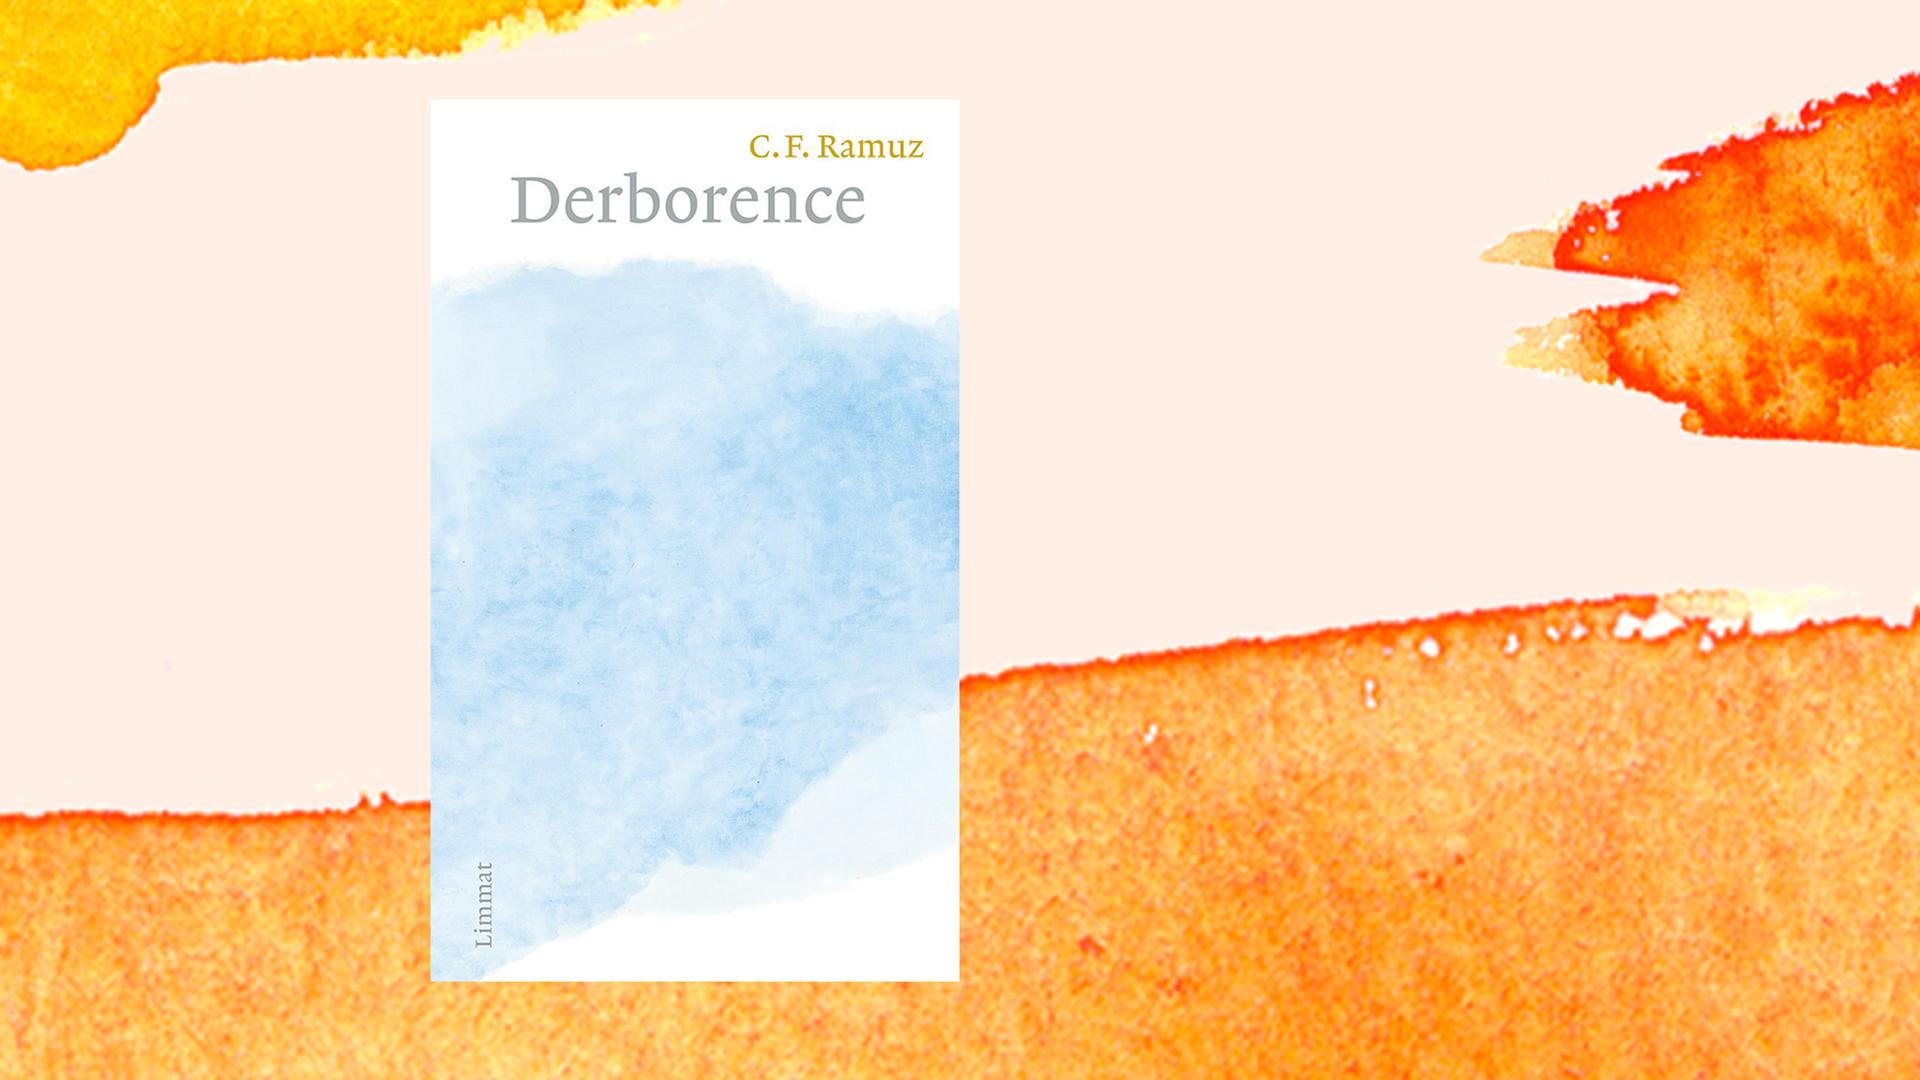 Buchcover von Charles Ferdinand Ramuz: "Derborence", Limmat Verlag, 2021.